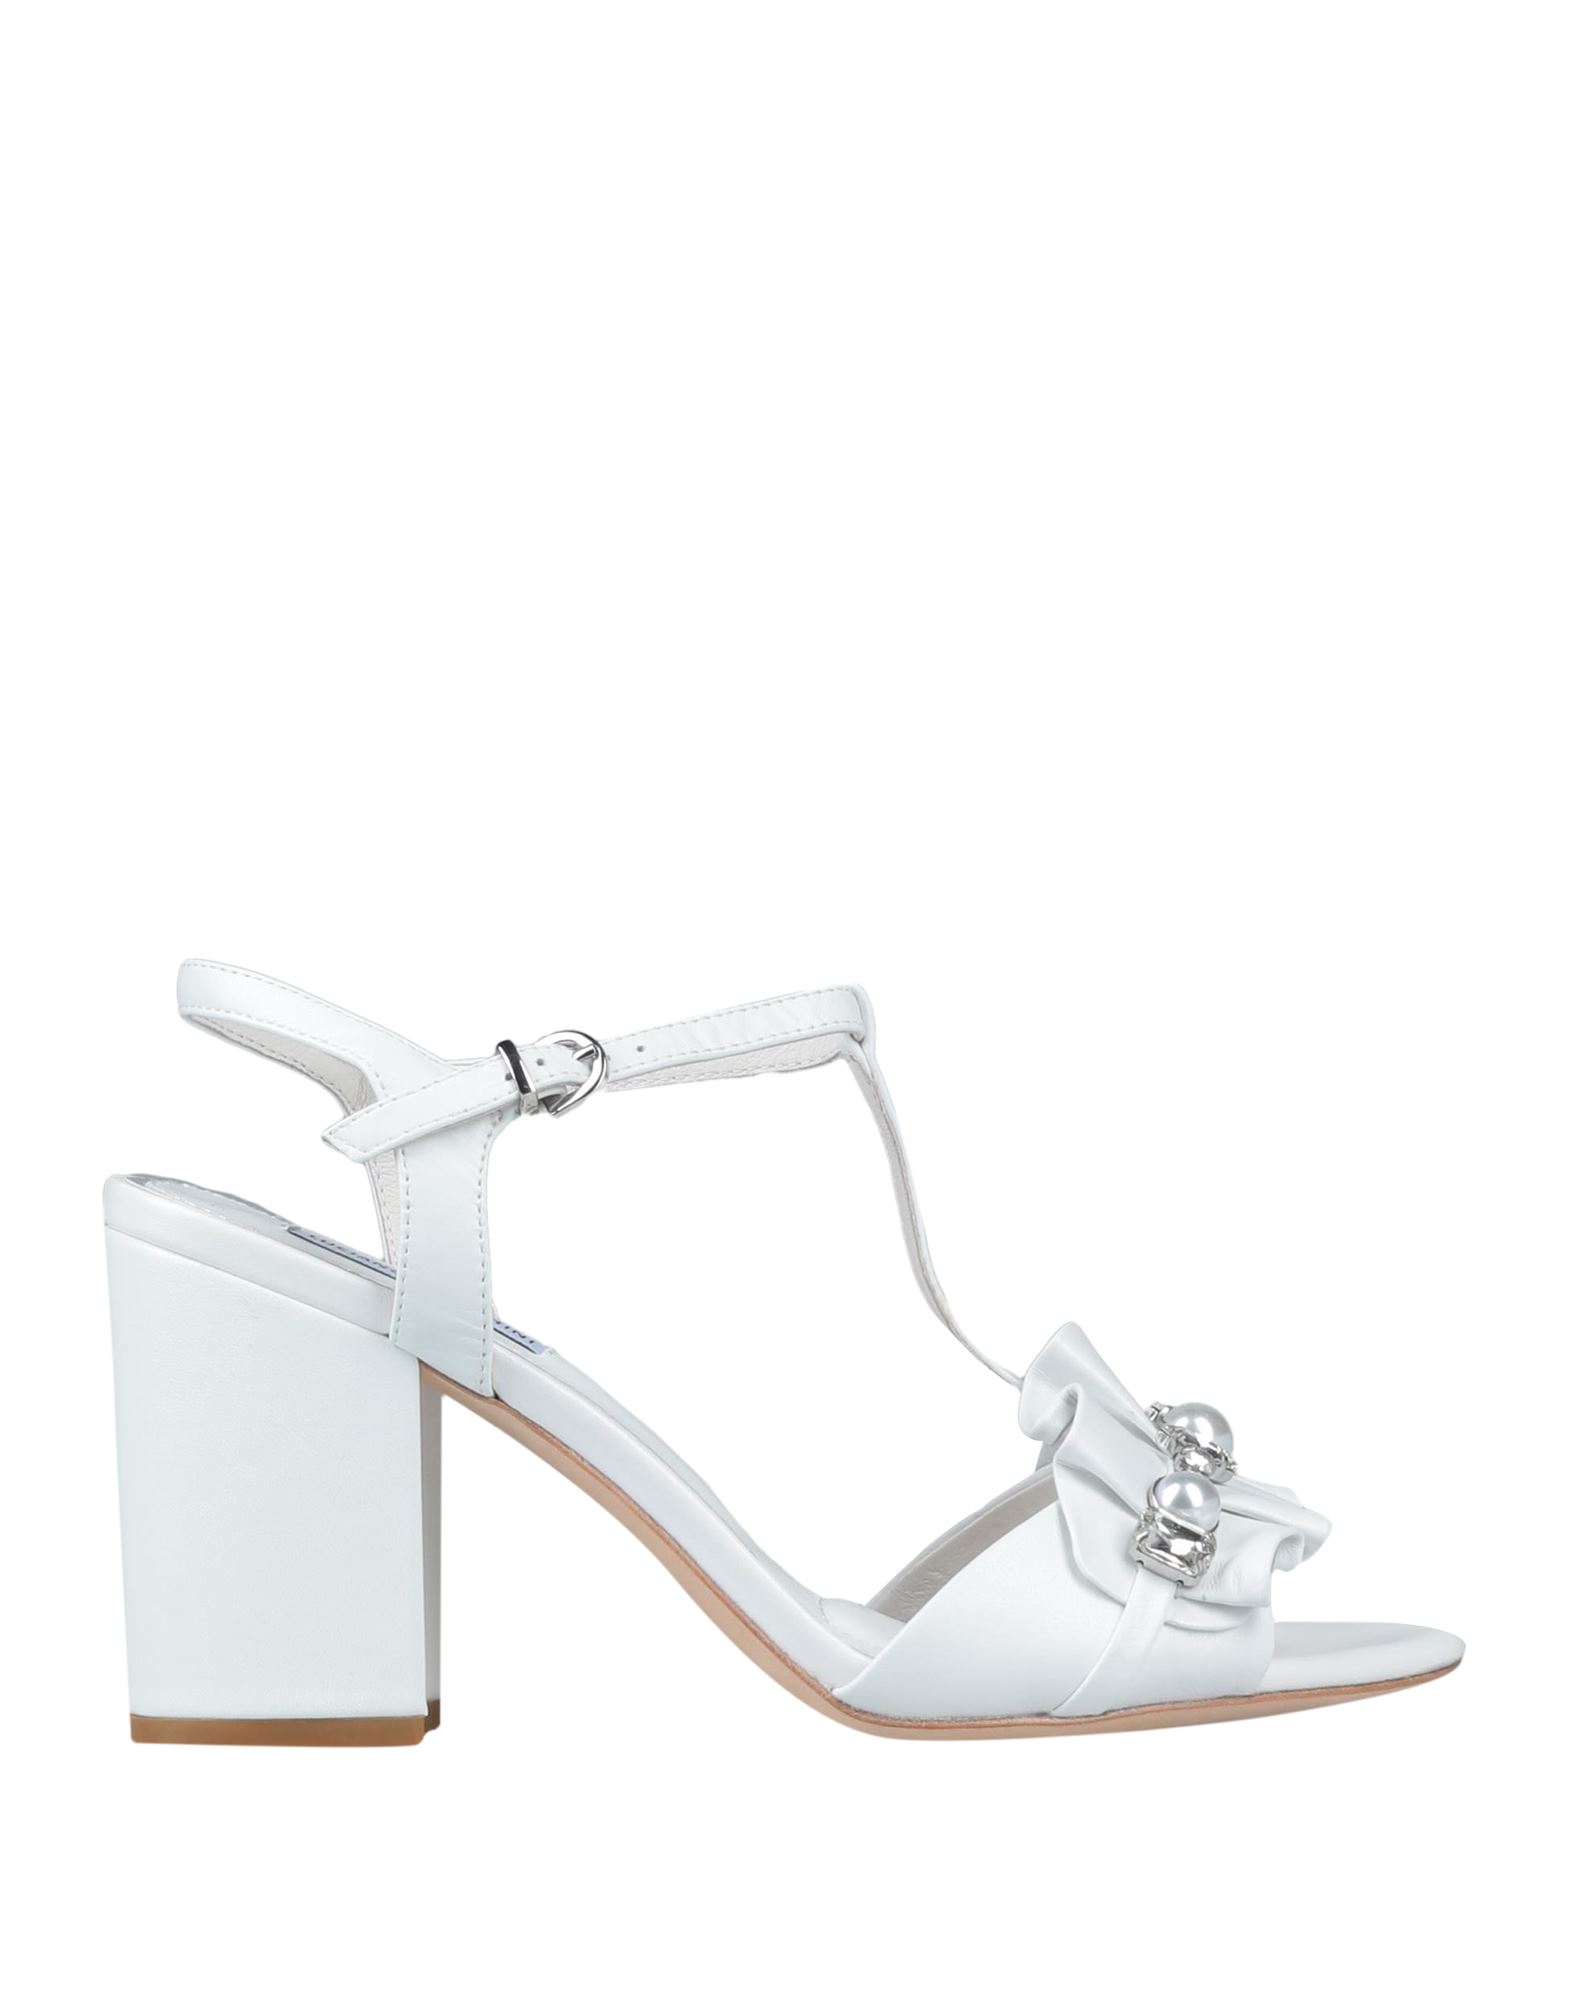 Luciano Barachini Sandals In White